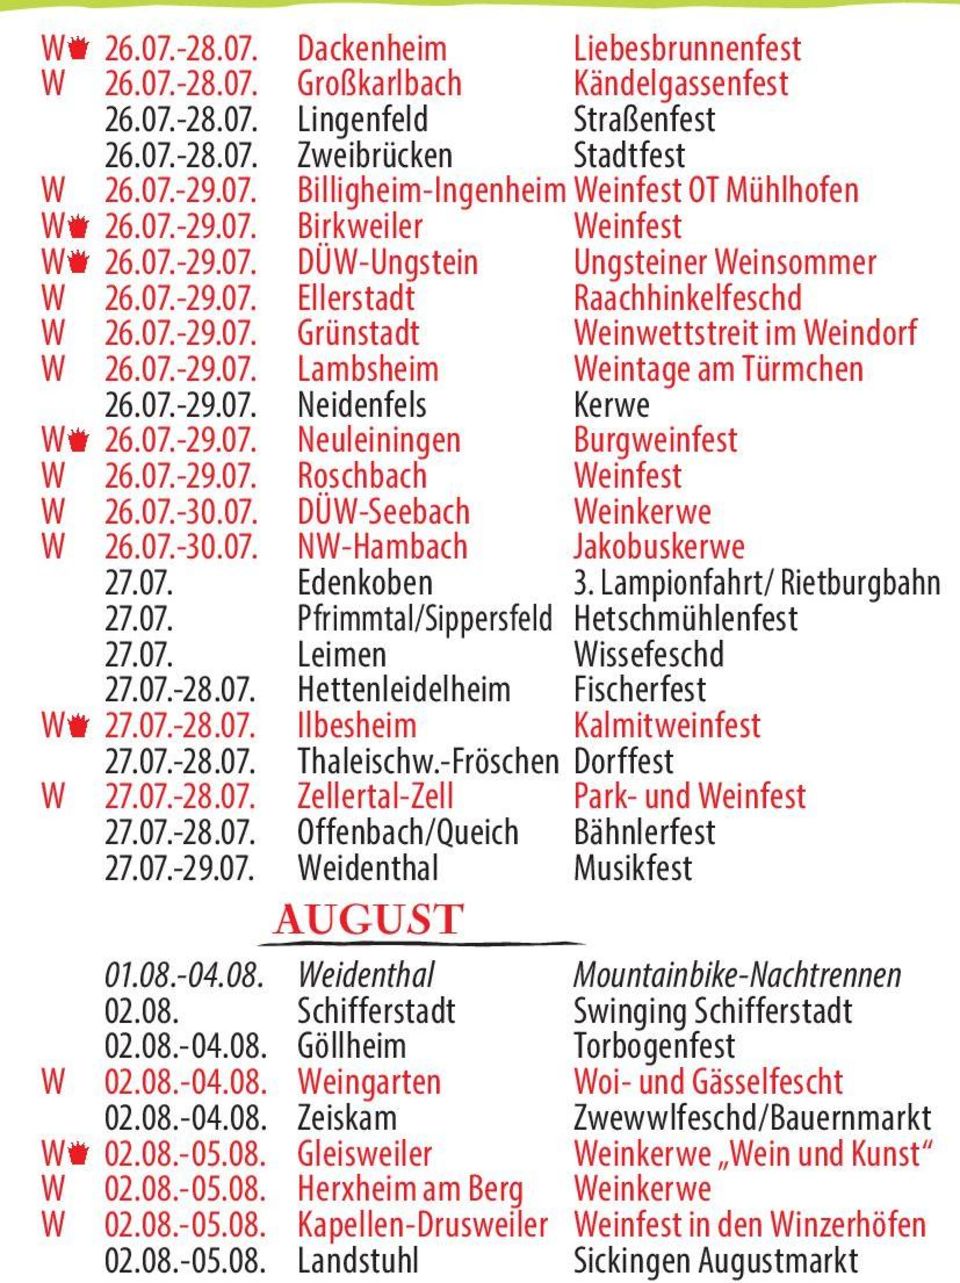 07.-29.07. Neidenfels Kerwe W 26.07.-29.07. Neuleiningen Burgweinfest W 26.07.-29.07. Roschbach Weinfest W 26.07.-30.07. DÜW-Seebach Weinkerwe W 26.07.-30.07. NW-Hambach Jakobuskerwe 27.07. Edenkoben 3.